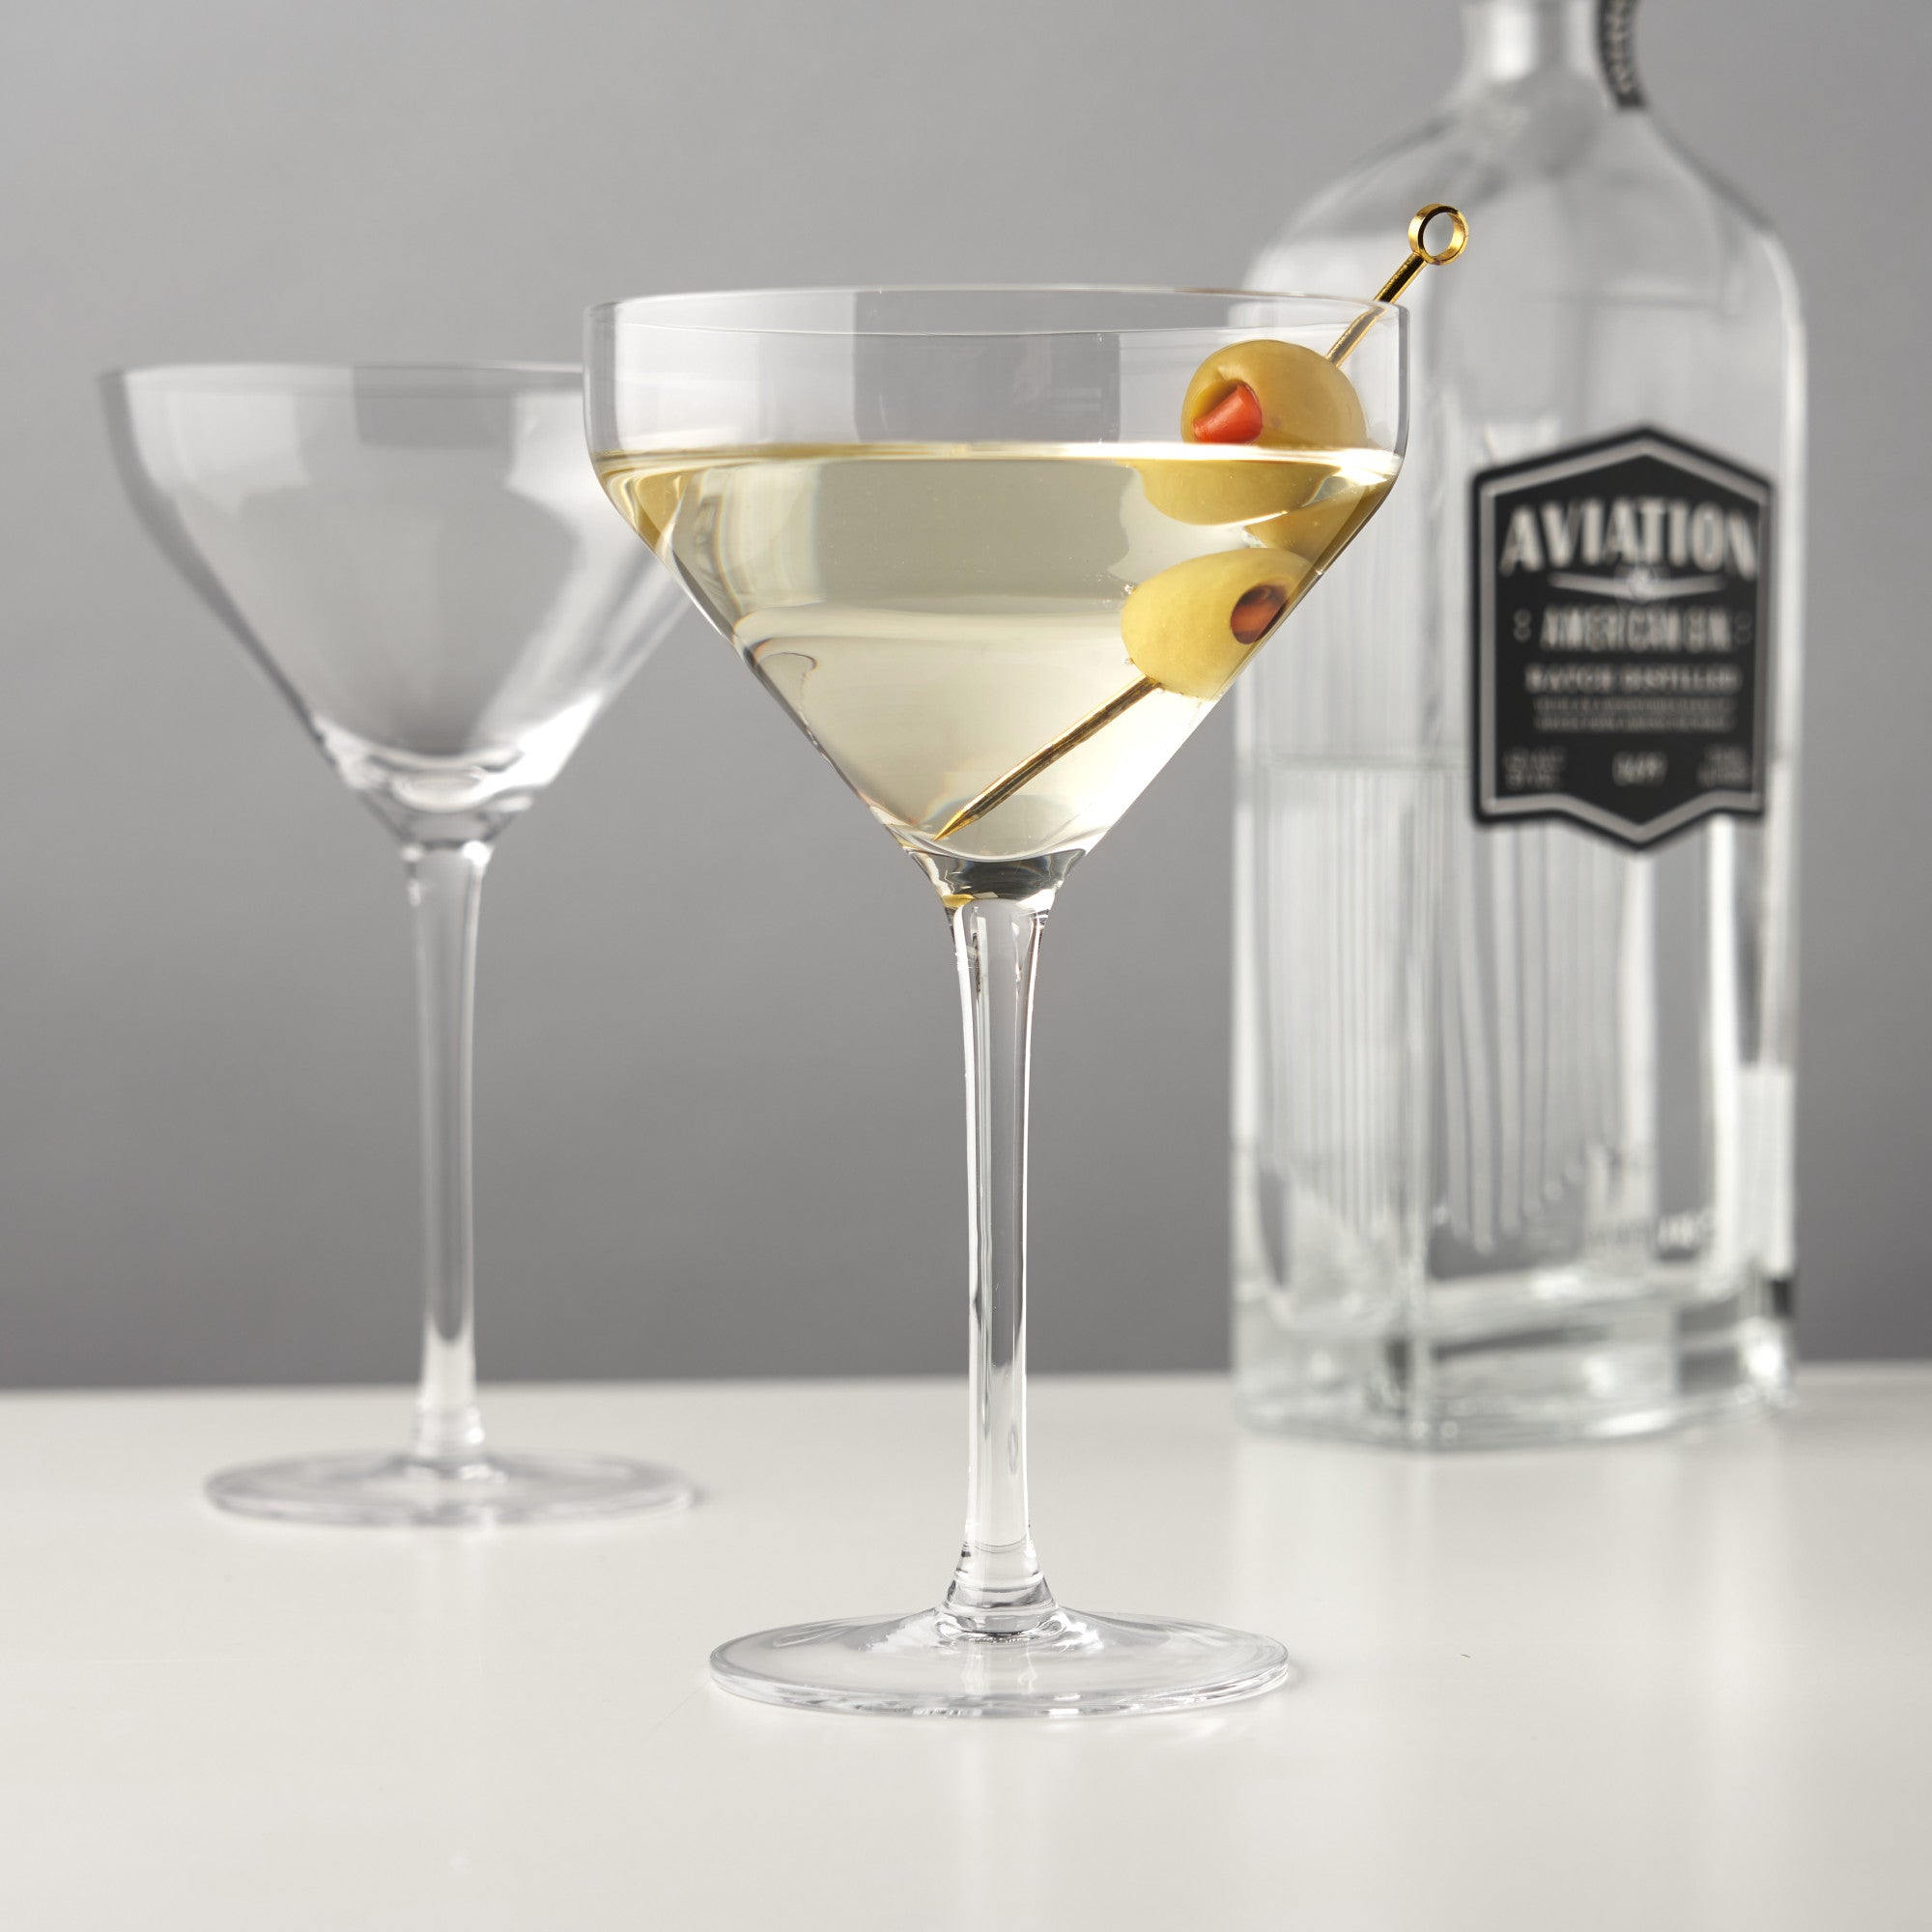 Angled Martini Glasses by Viski (1083) Drinkware Viski